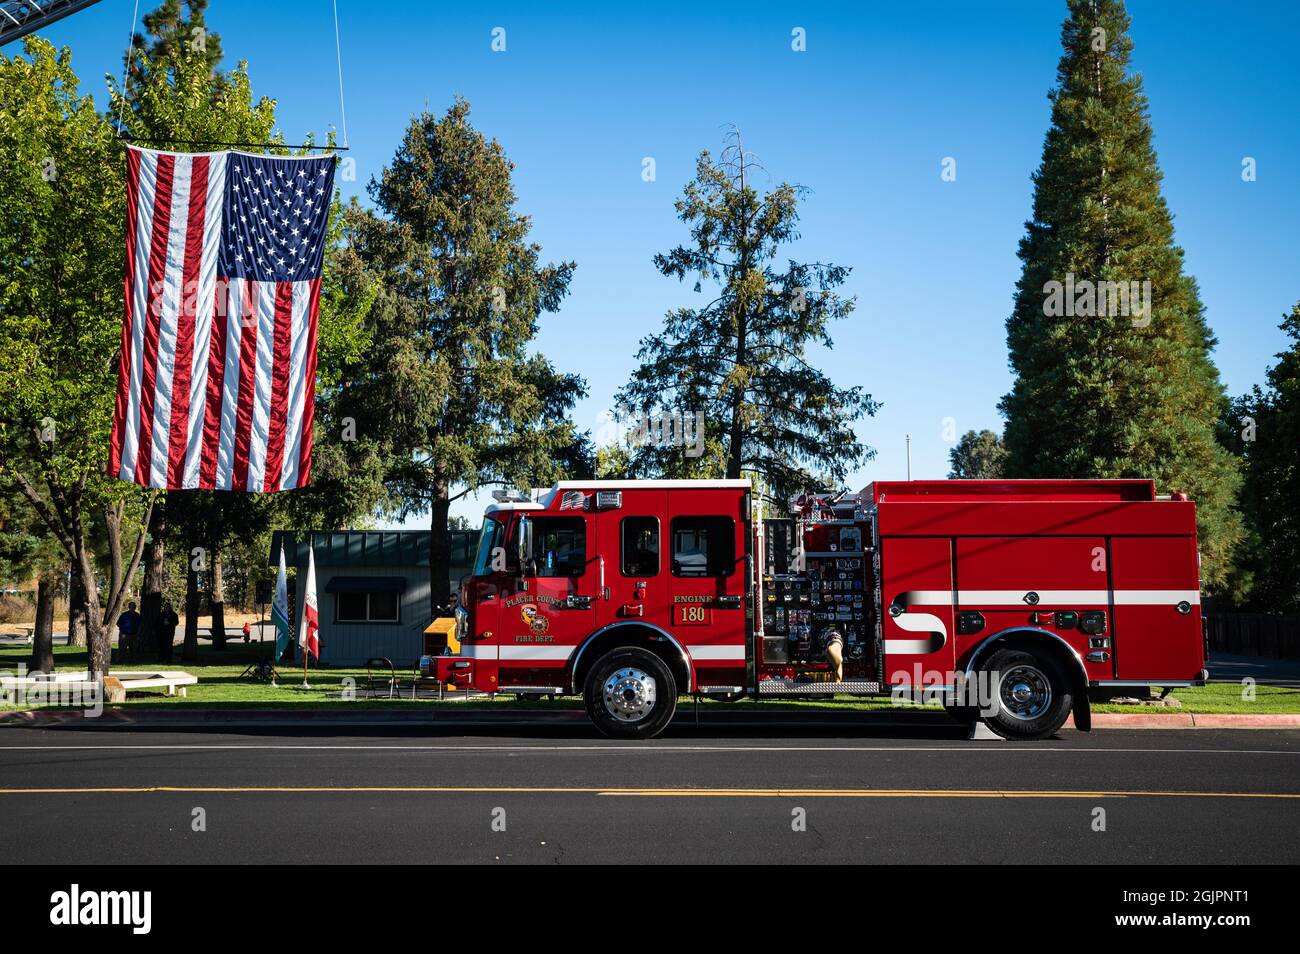 Foto eines Feuerwehrwagens und einer großen amerikanischen Flagge, die auf einer Straße im Rahmen einer Feier zum 20. Jahrestag des Bepflanzens eines Freiheitsbaums für 9/11 hängt Stockfoto